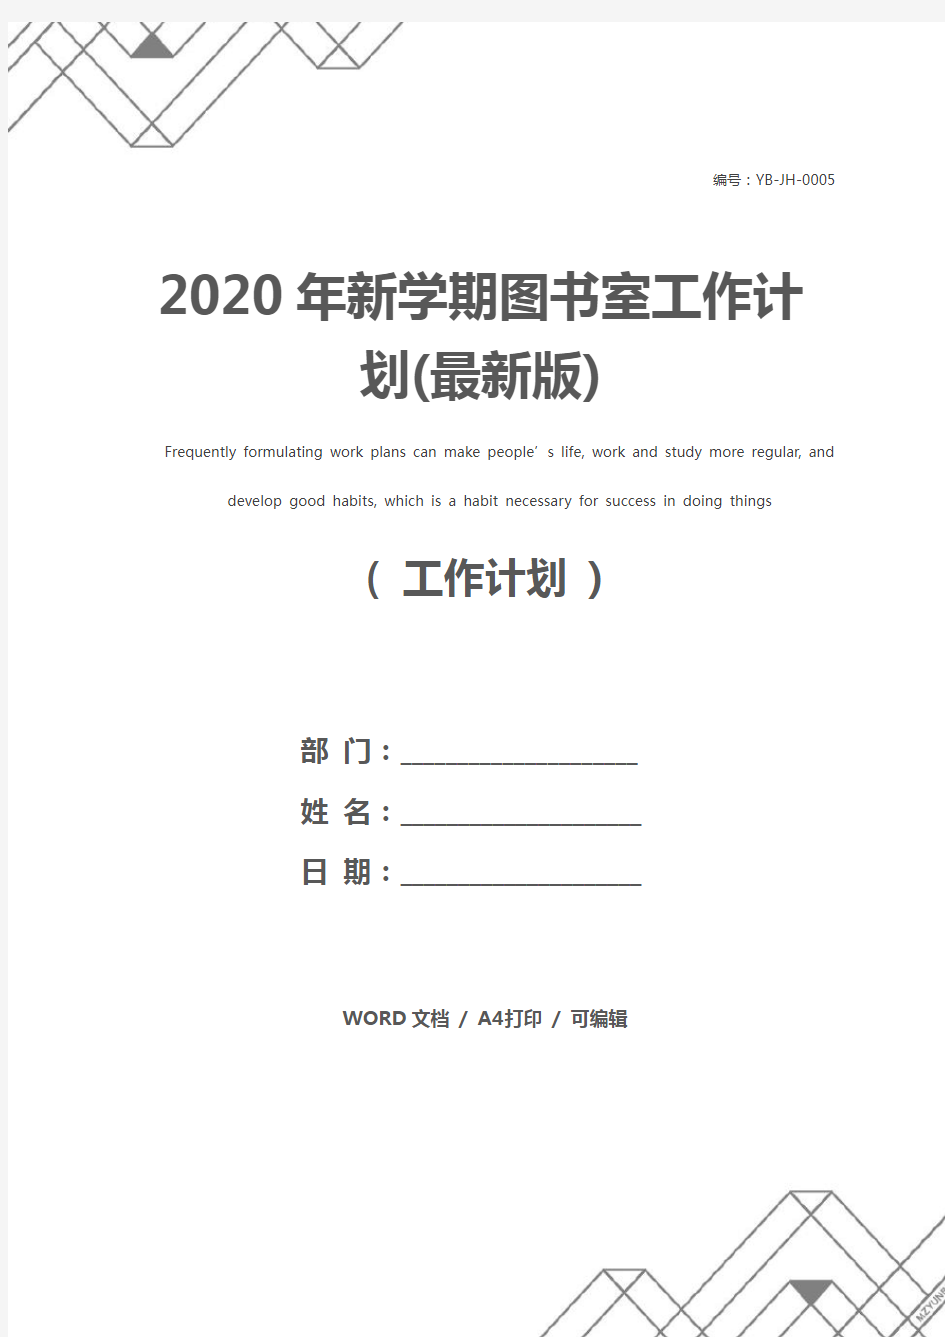 2020年新学期图书室工作计划(最新版)